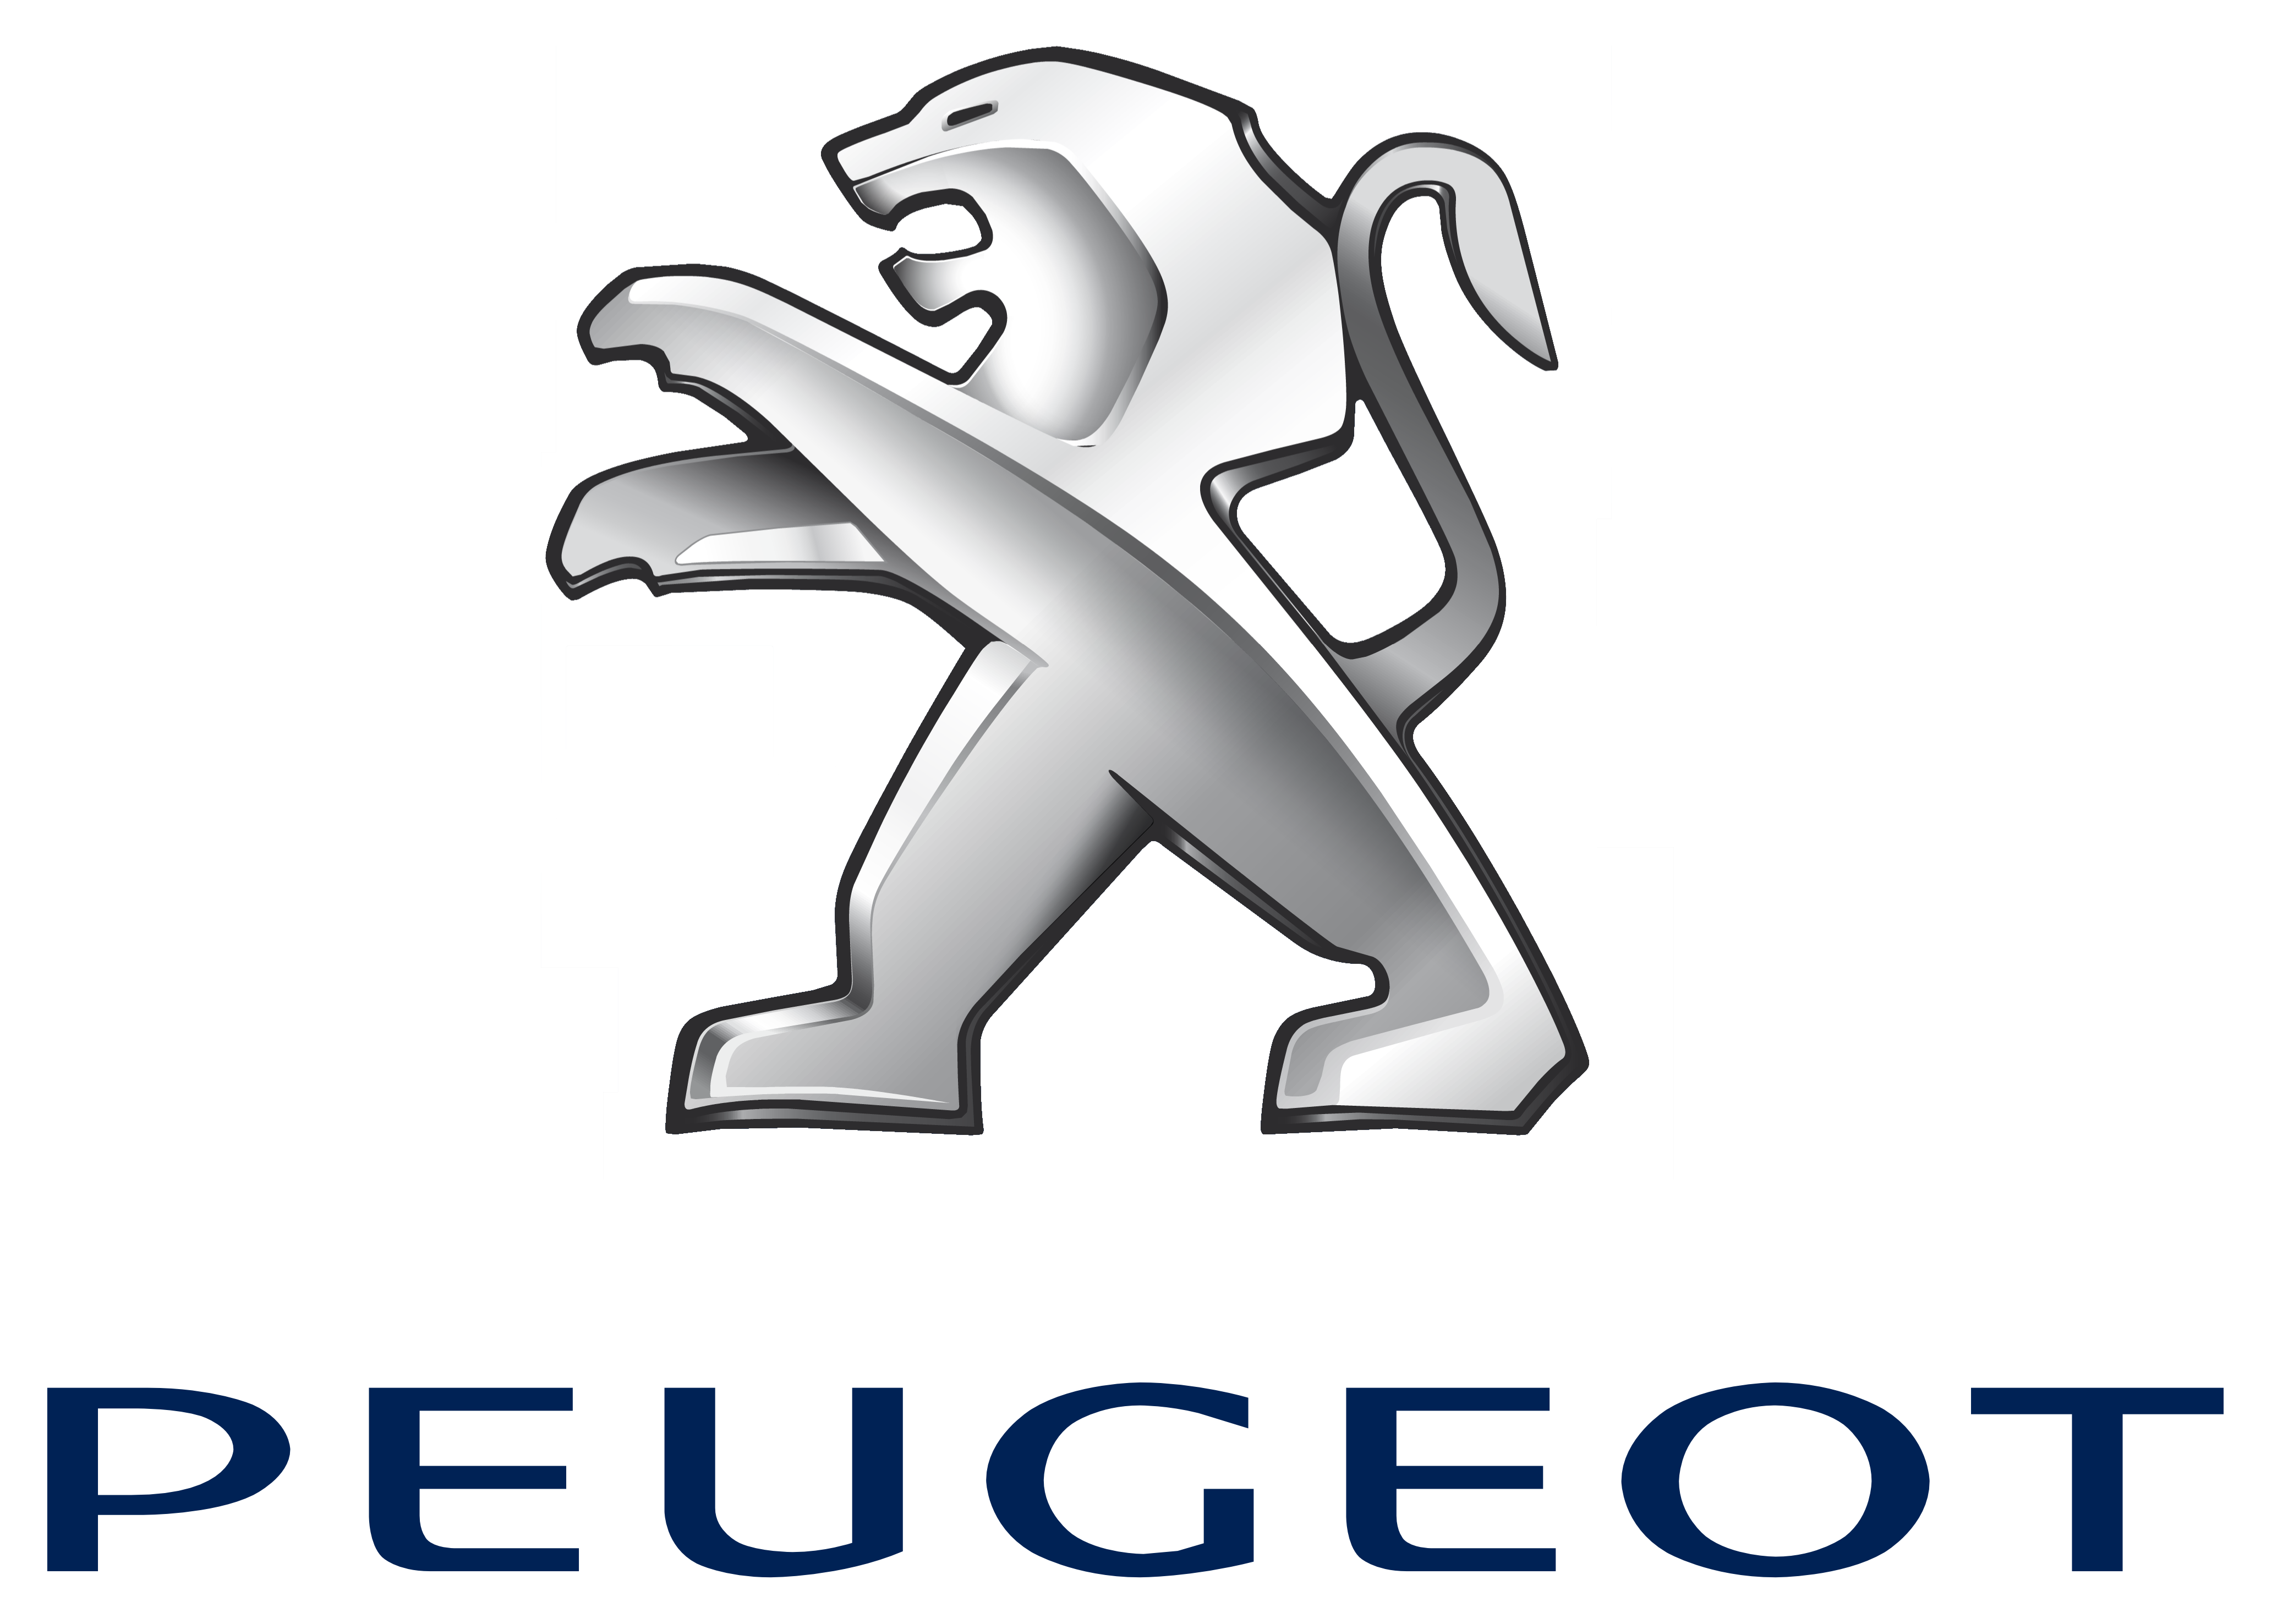 Un nouveau modèle pour Peugeot en ce début d’année !